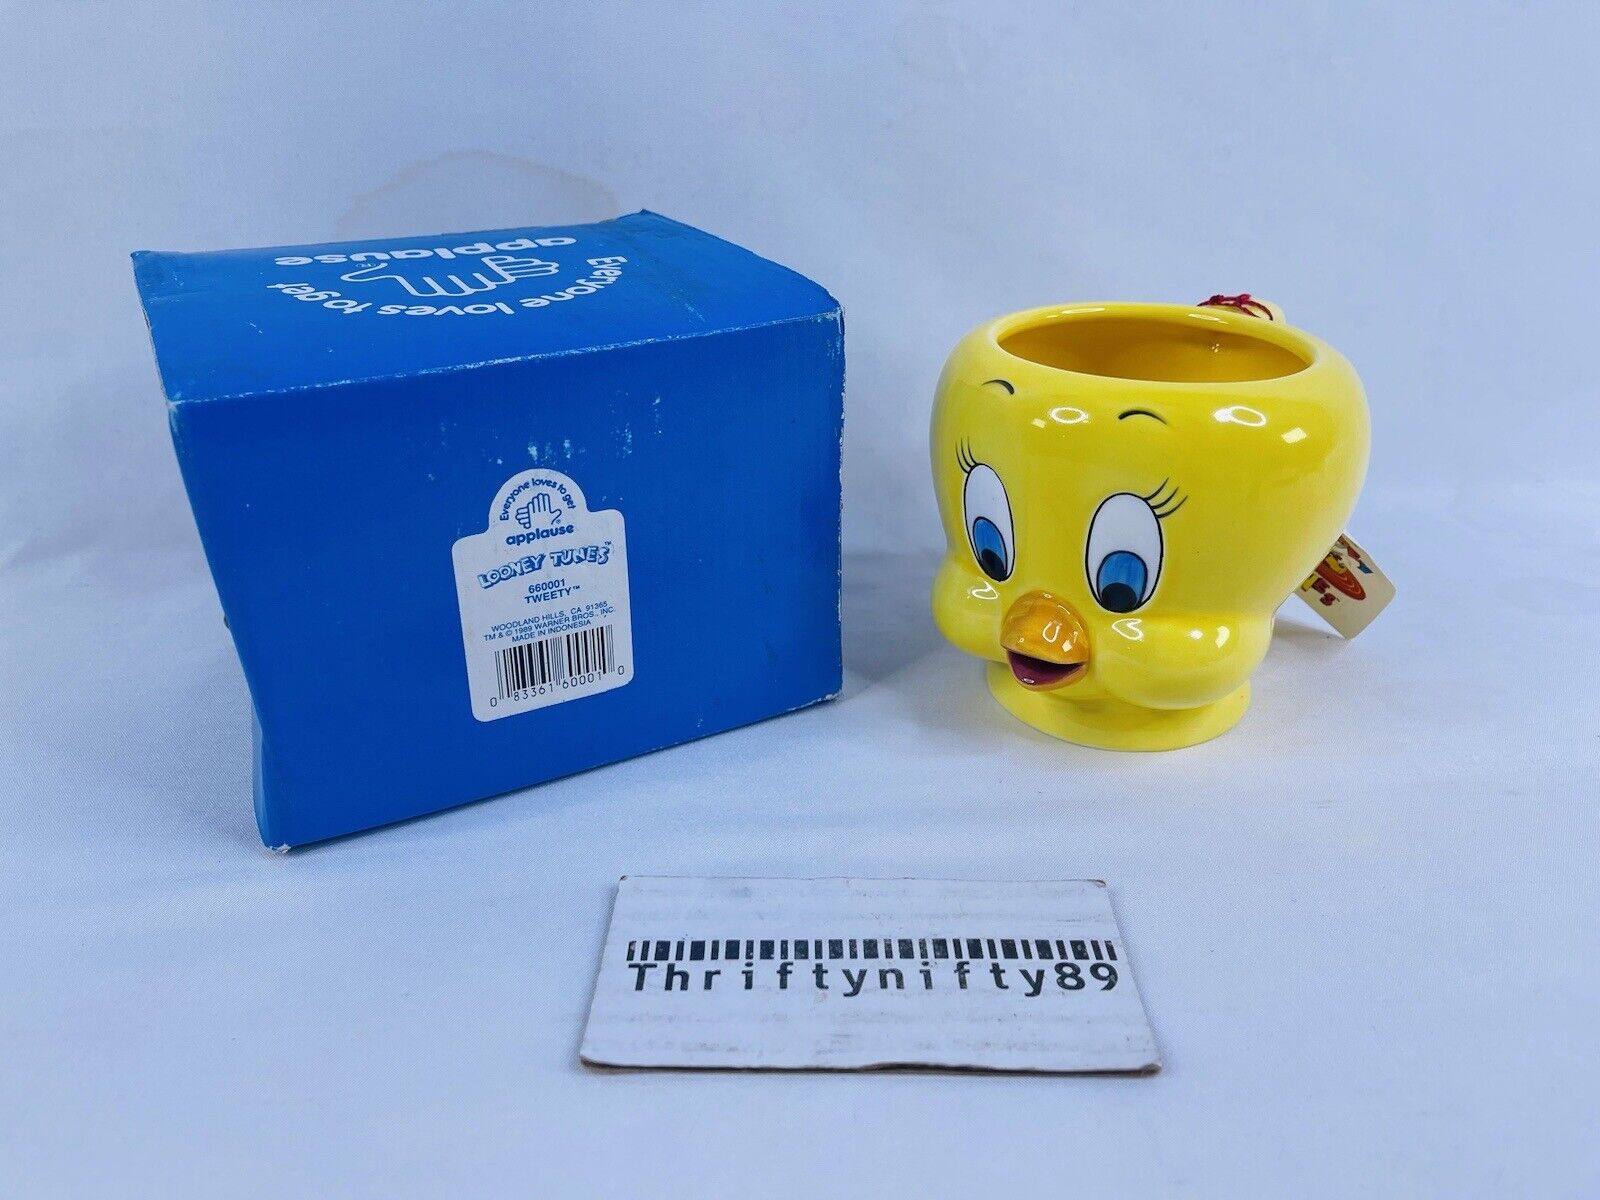 New Tweety Bird Cup Applause Looney Tunes Coffee Mug 4